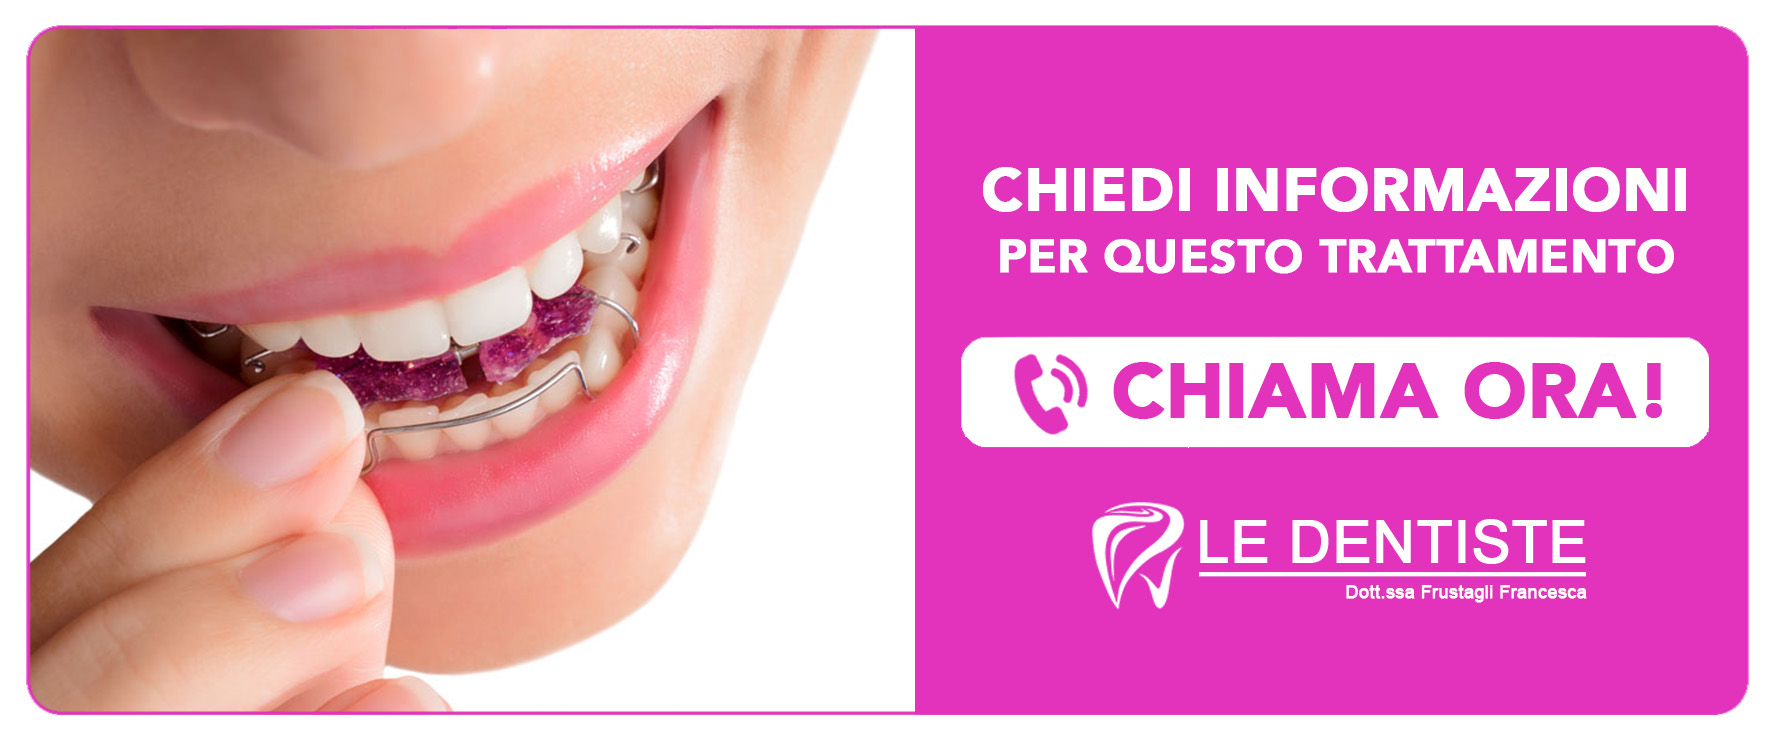 ortodonzia-mobile Cisliano (Milano)